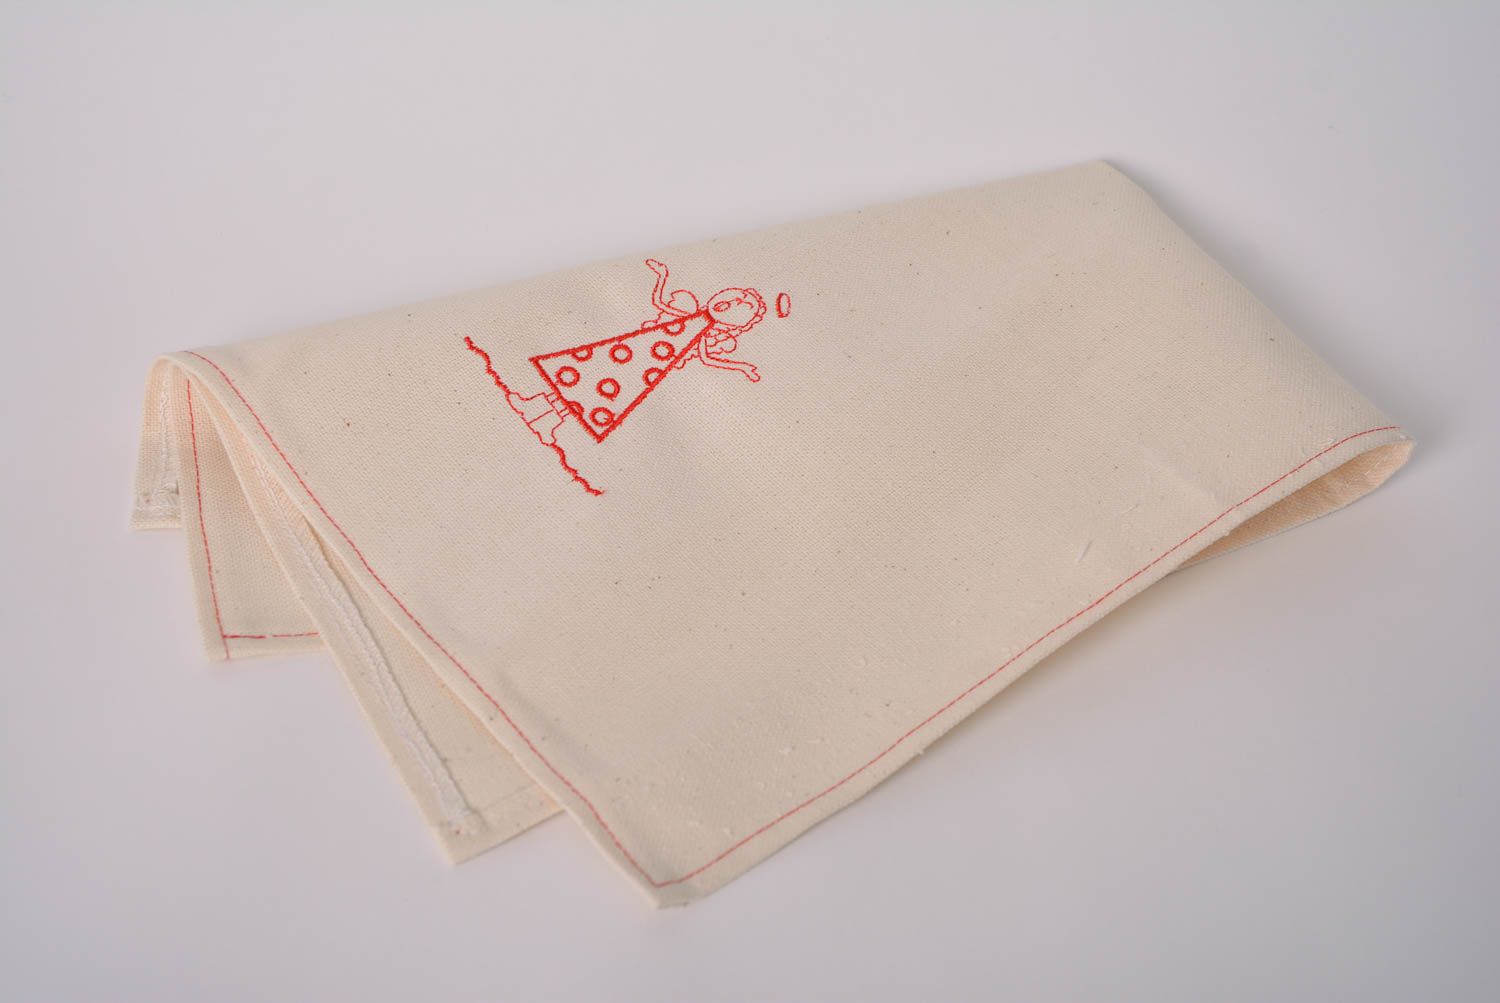 Serviette de table en tissu de mi-lin beige brodée rectangulaire faite main Ange photo 4